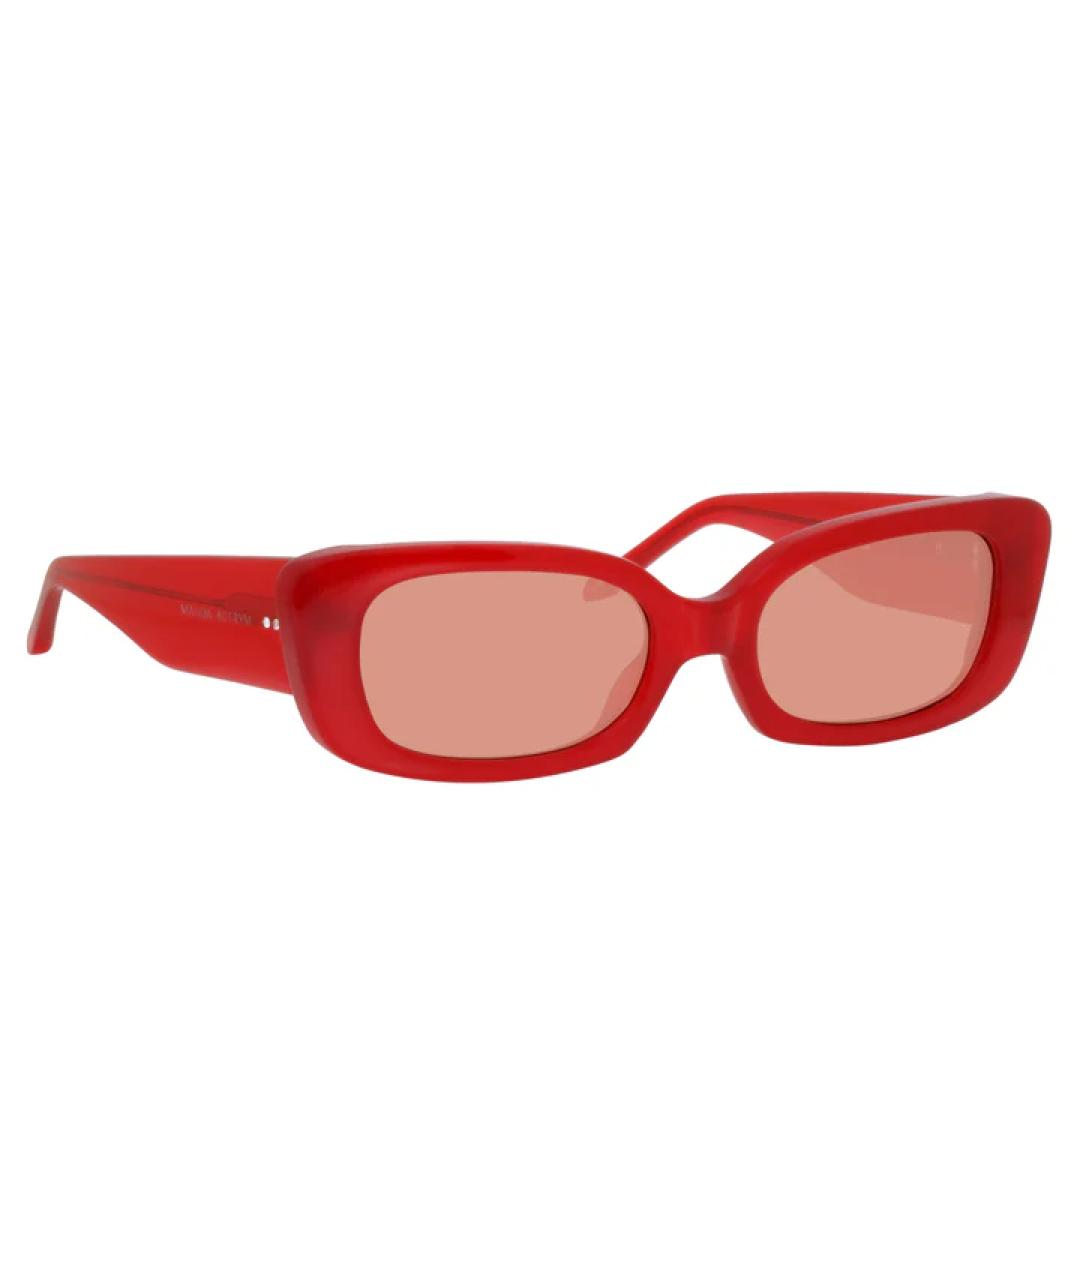 LINDA FARROW Красные солнцезащитные очки, фото 2